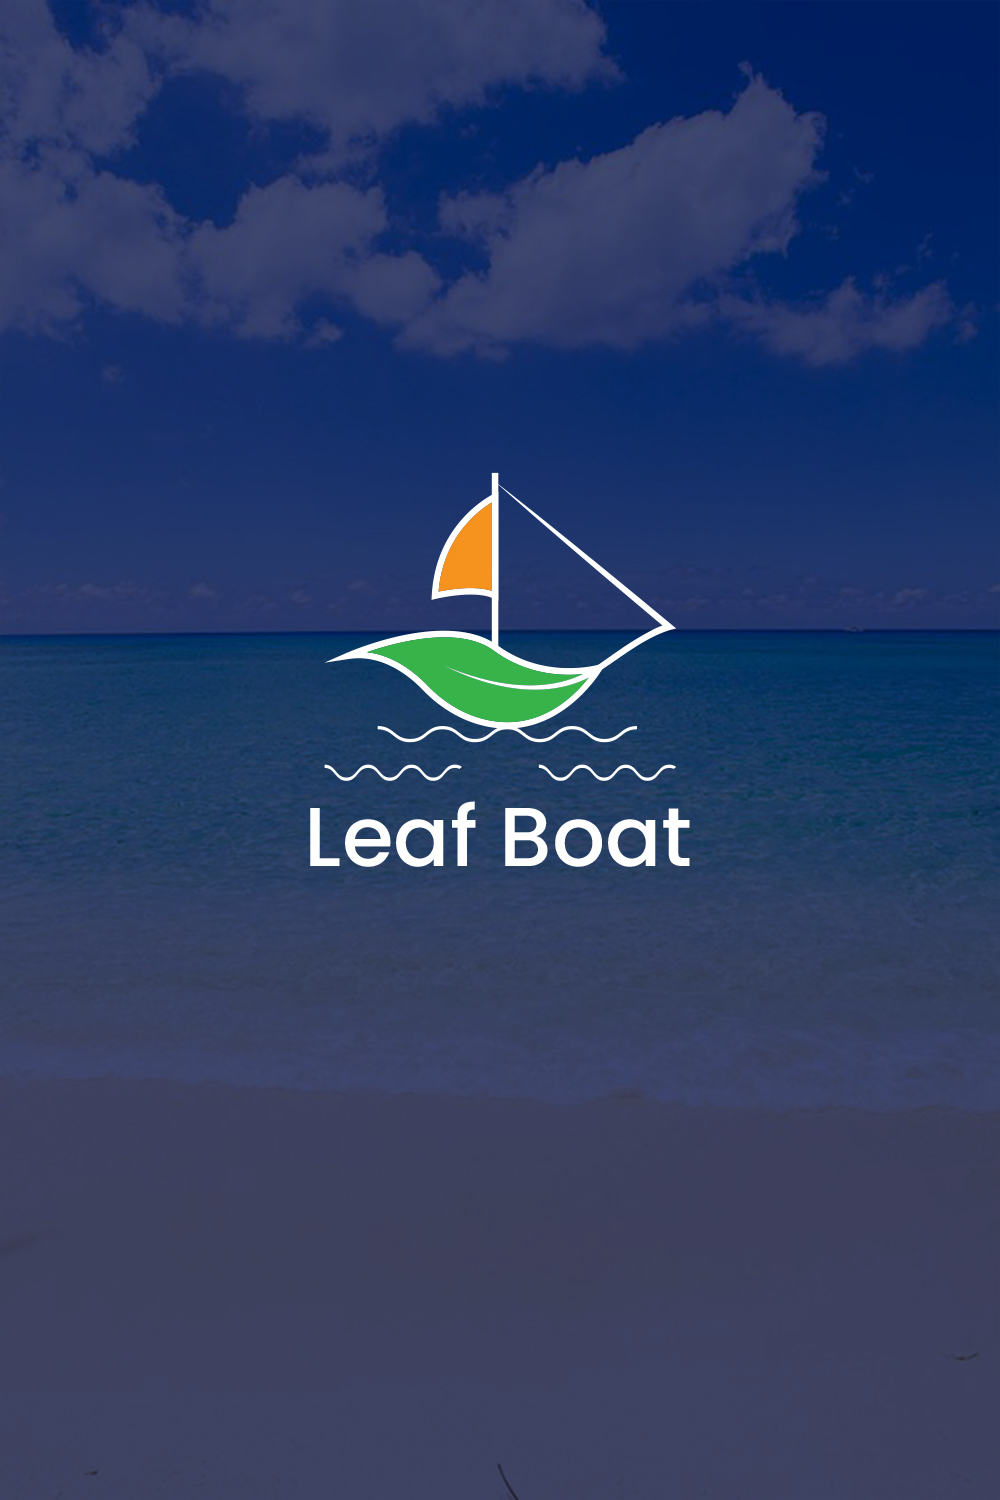 leaf boat logo pinterest preview image.